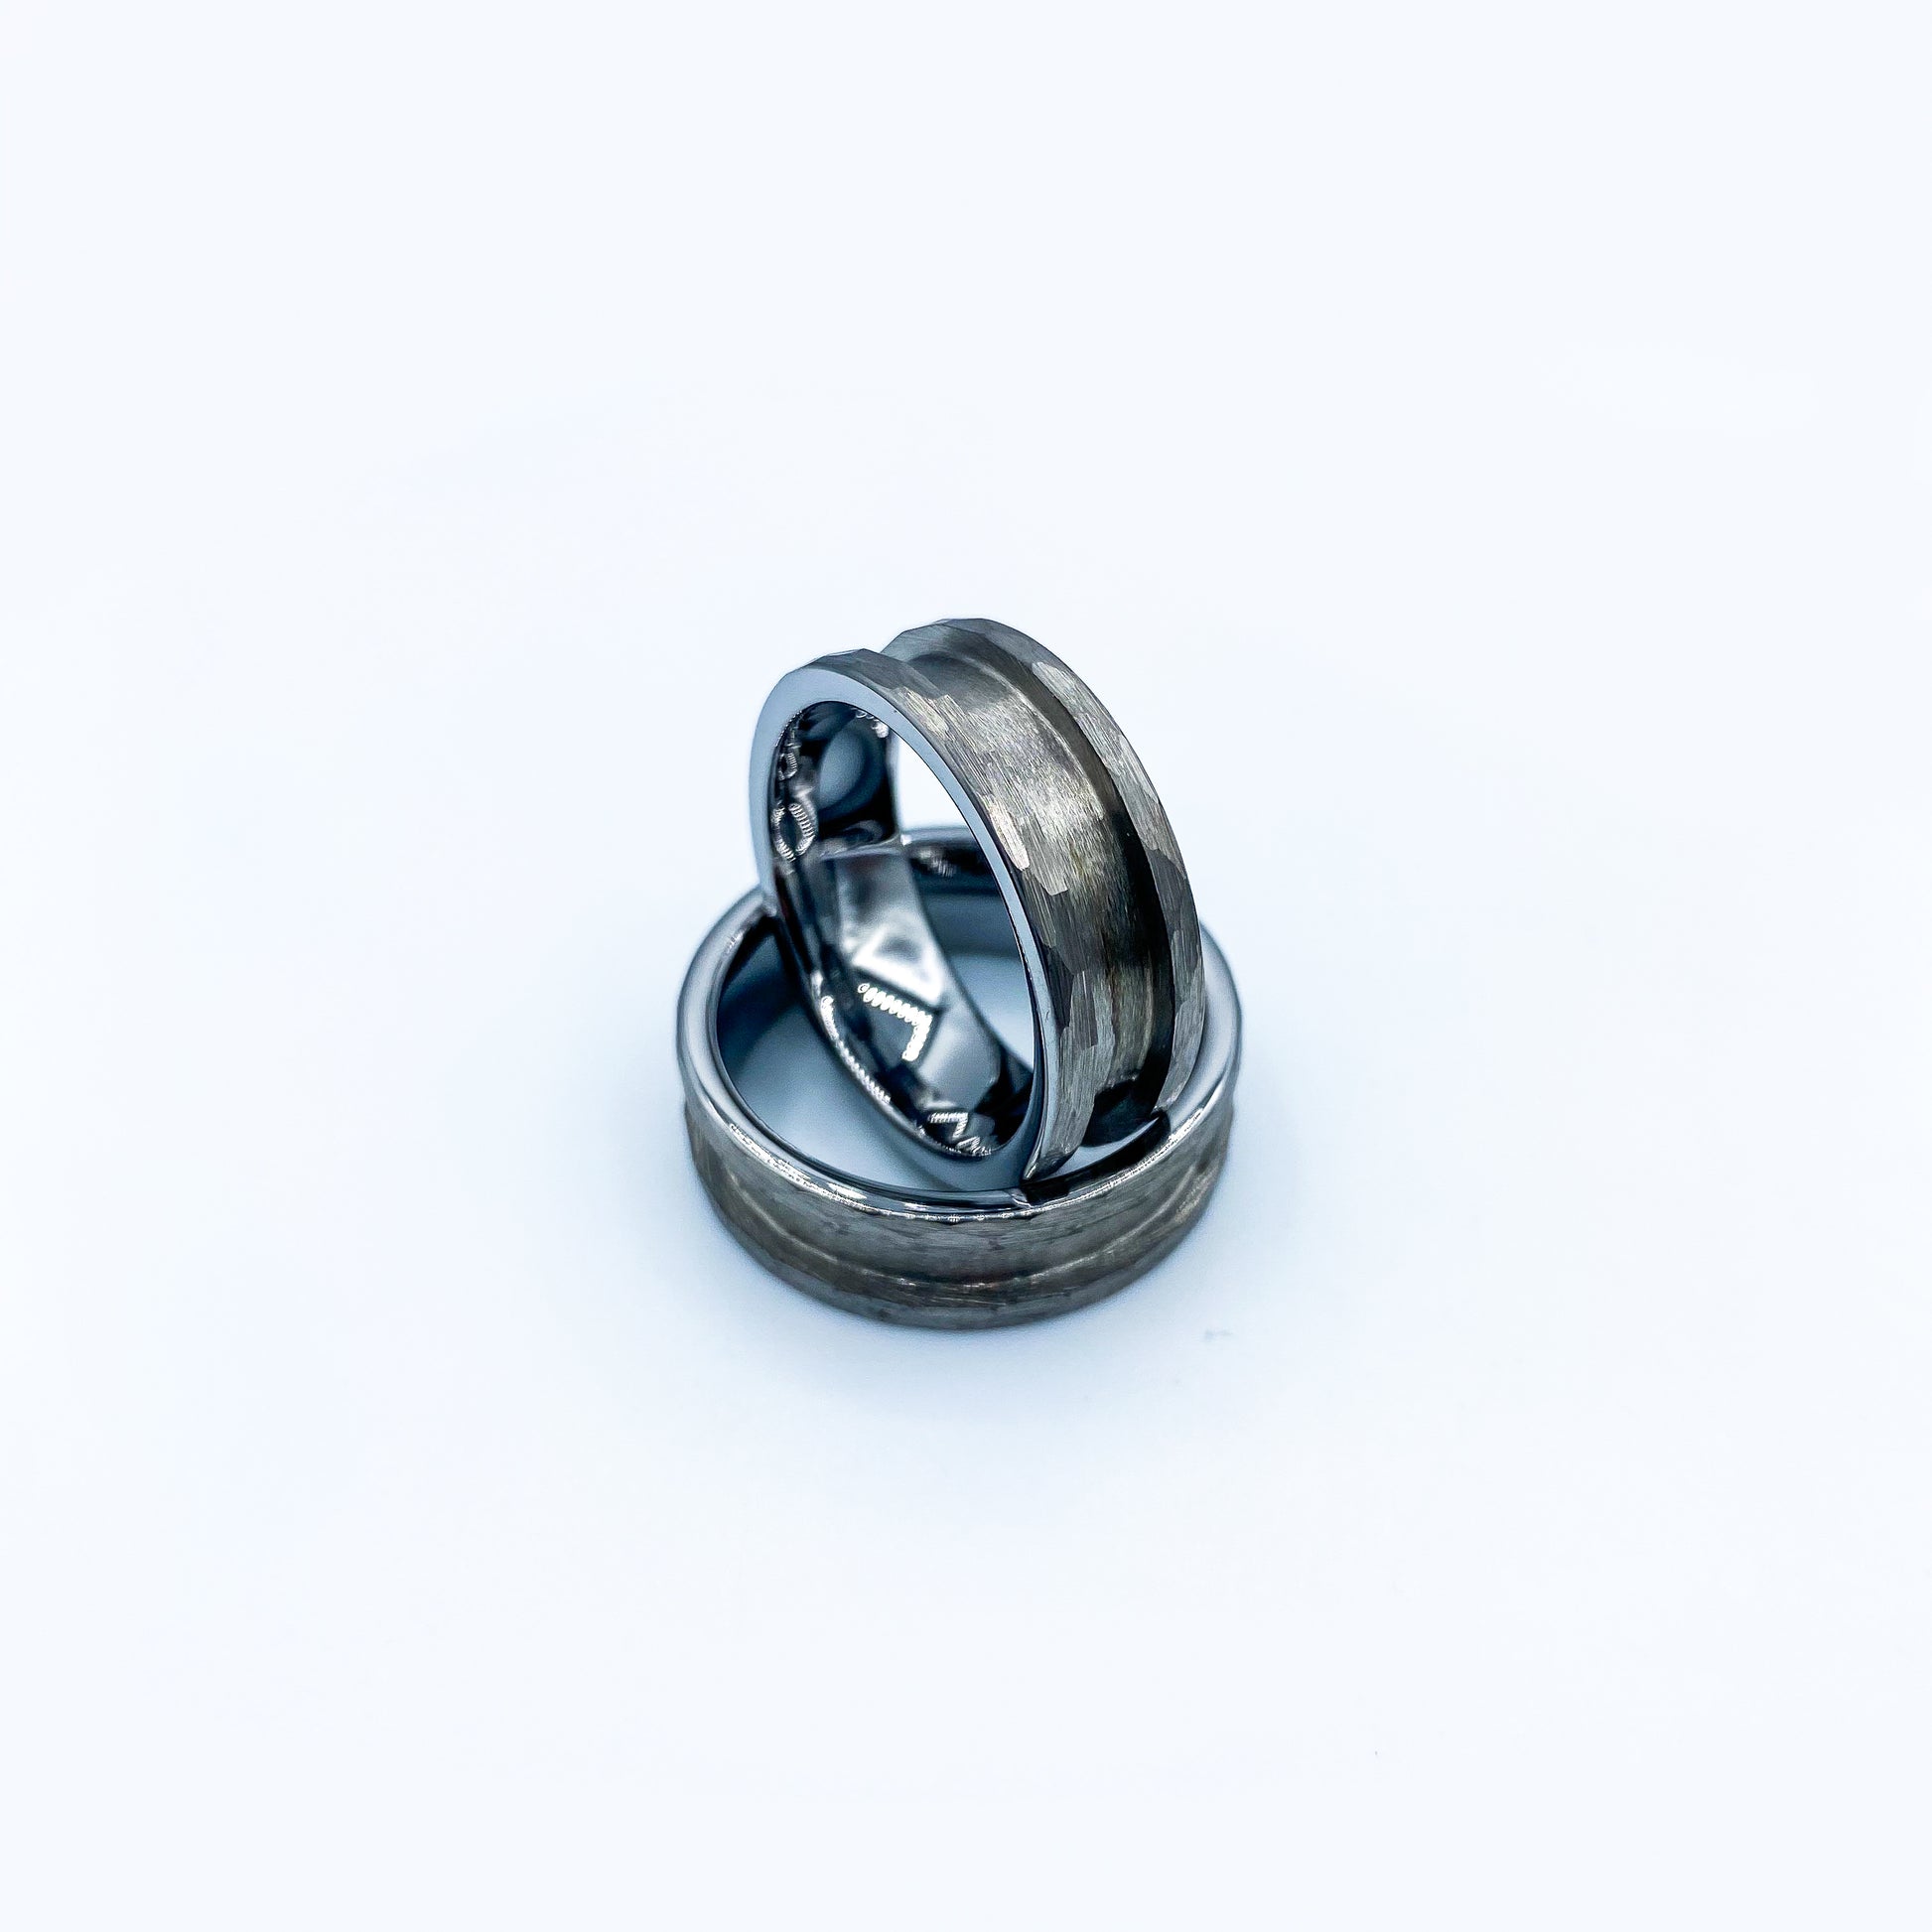 Hammered Tungsten Ring Blank - Patrick Adair Supplies